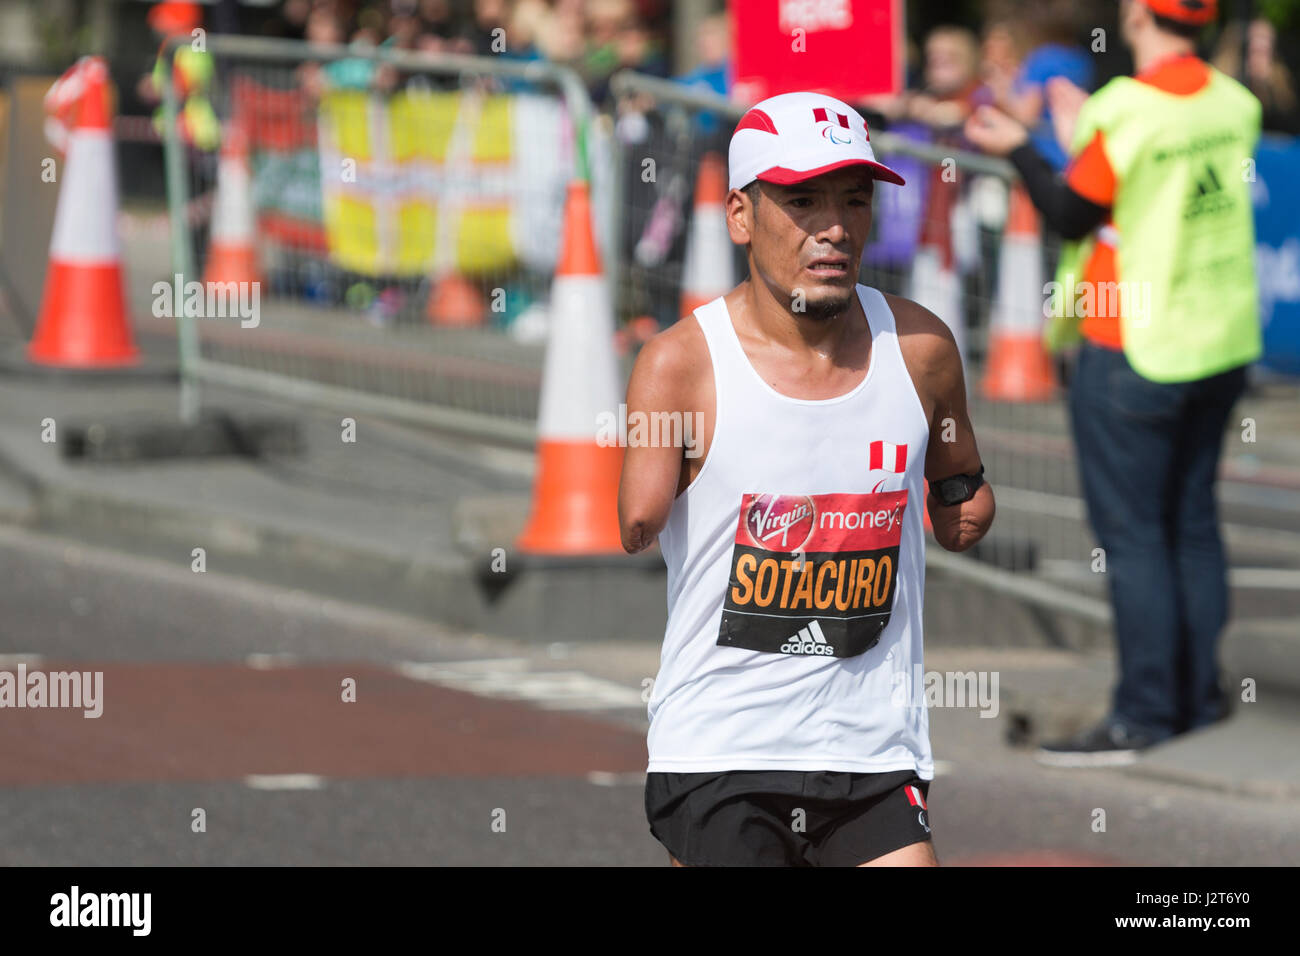 Efrain Sotacuro s'exécutant dans la Vierge Argent Marathon de Londres 2017, l'Autoroute, London, UK Banque D'Images